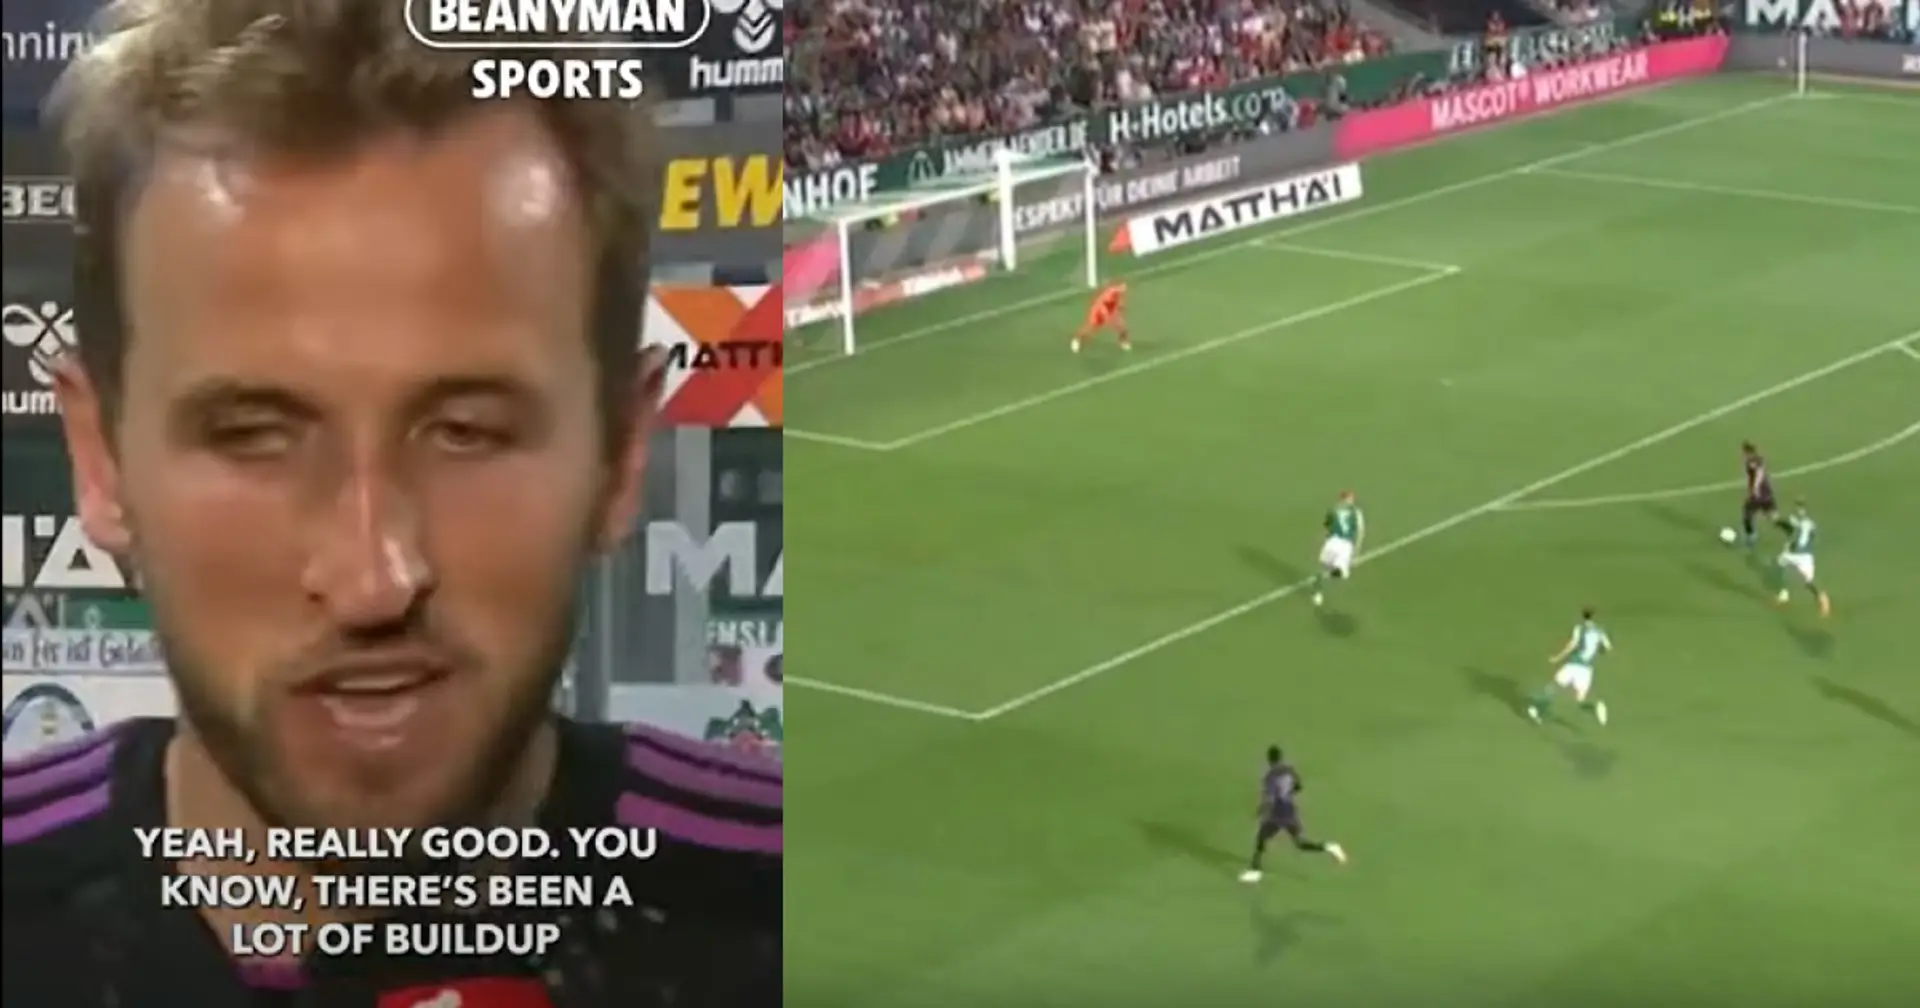 "Ha battuto il record di gol di Shearer!": i tifosi reagiscono all'esordio con gol di Kane al Bayern